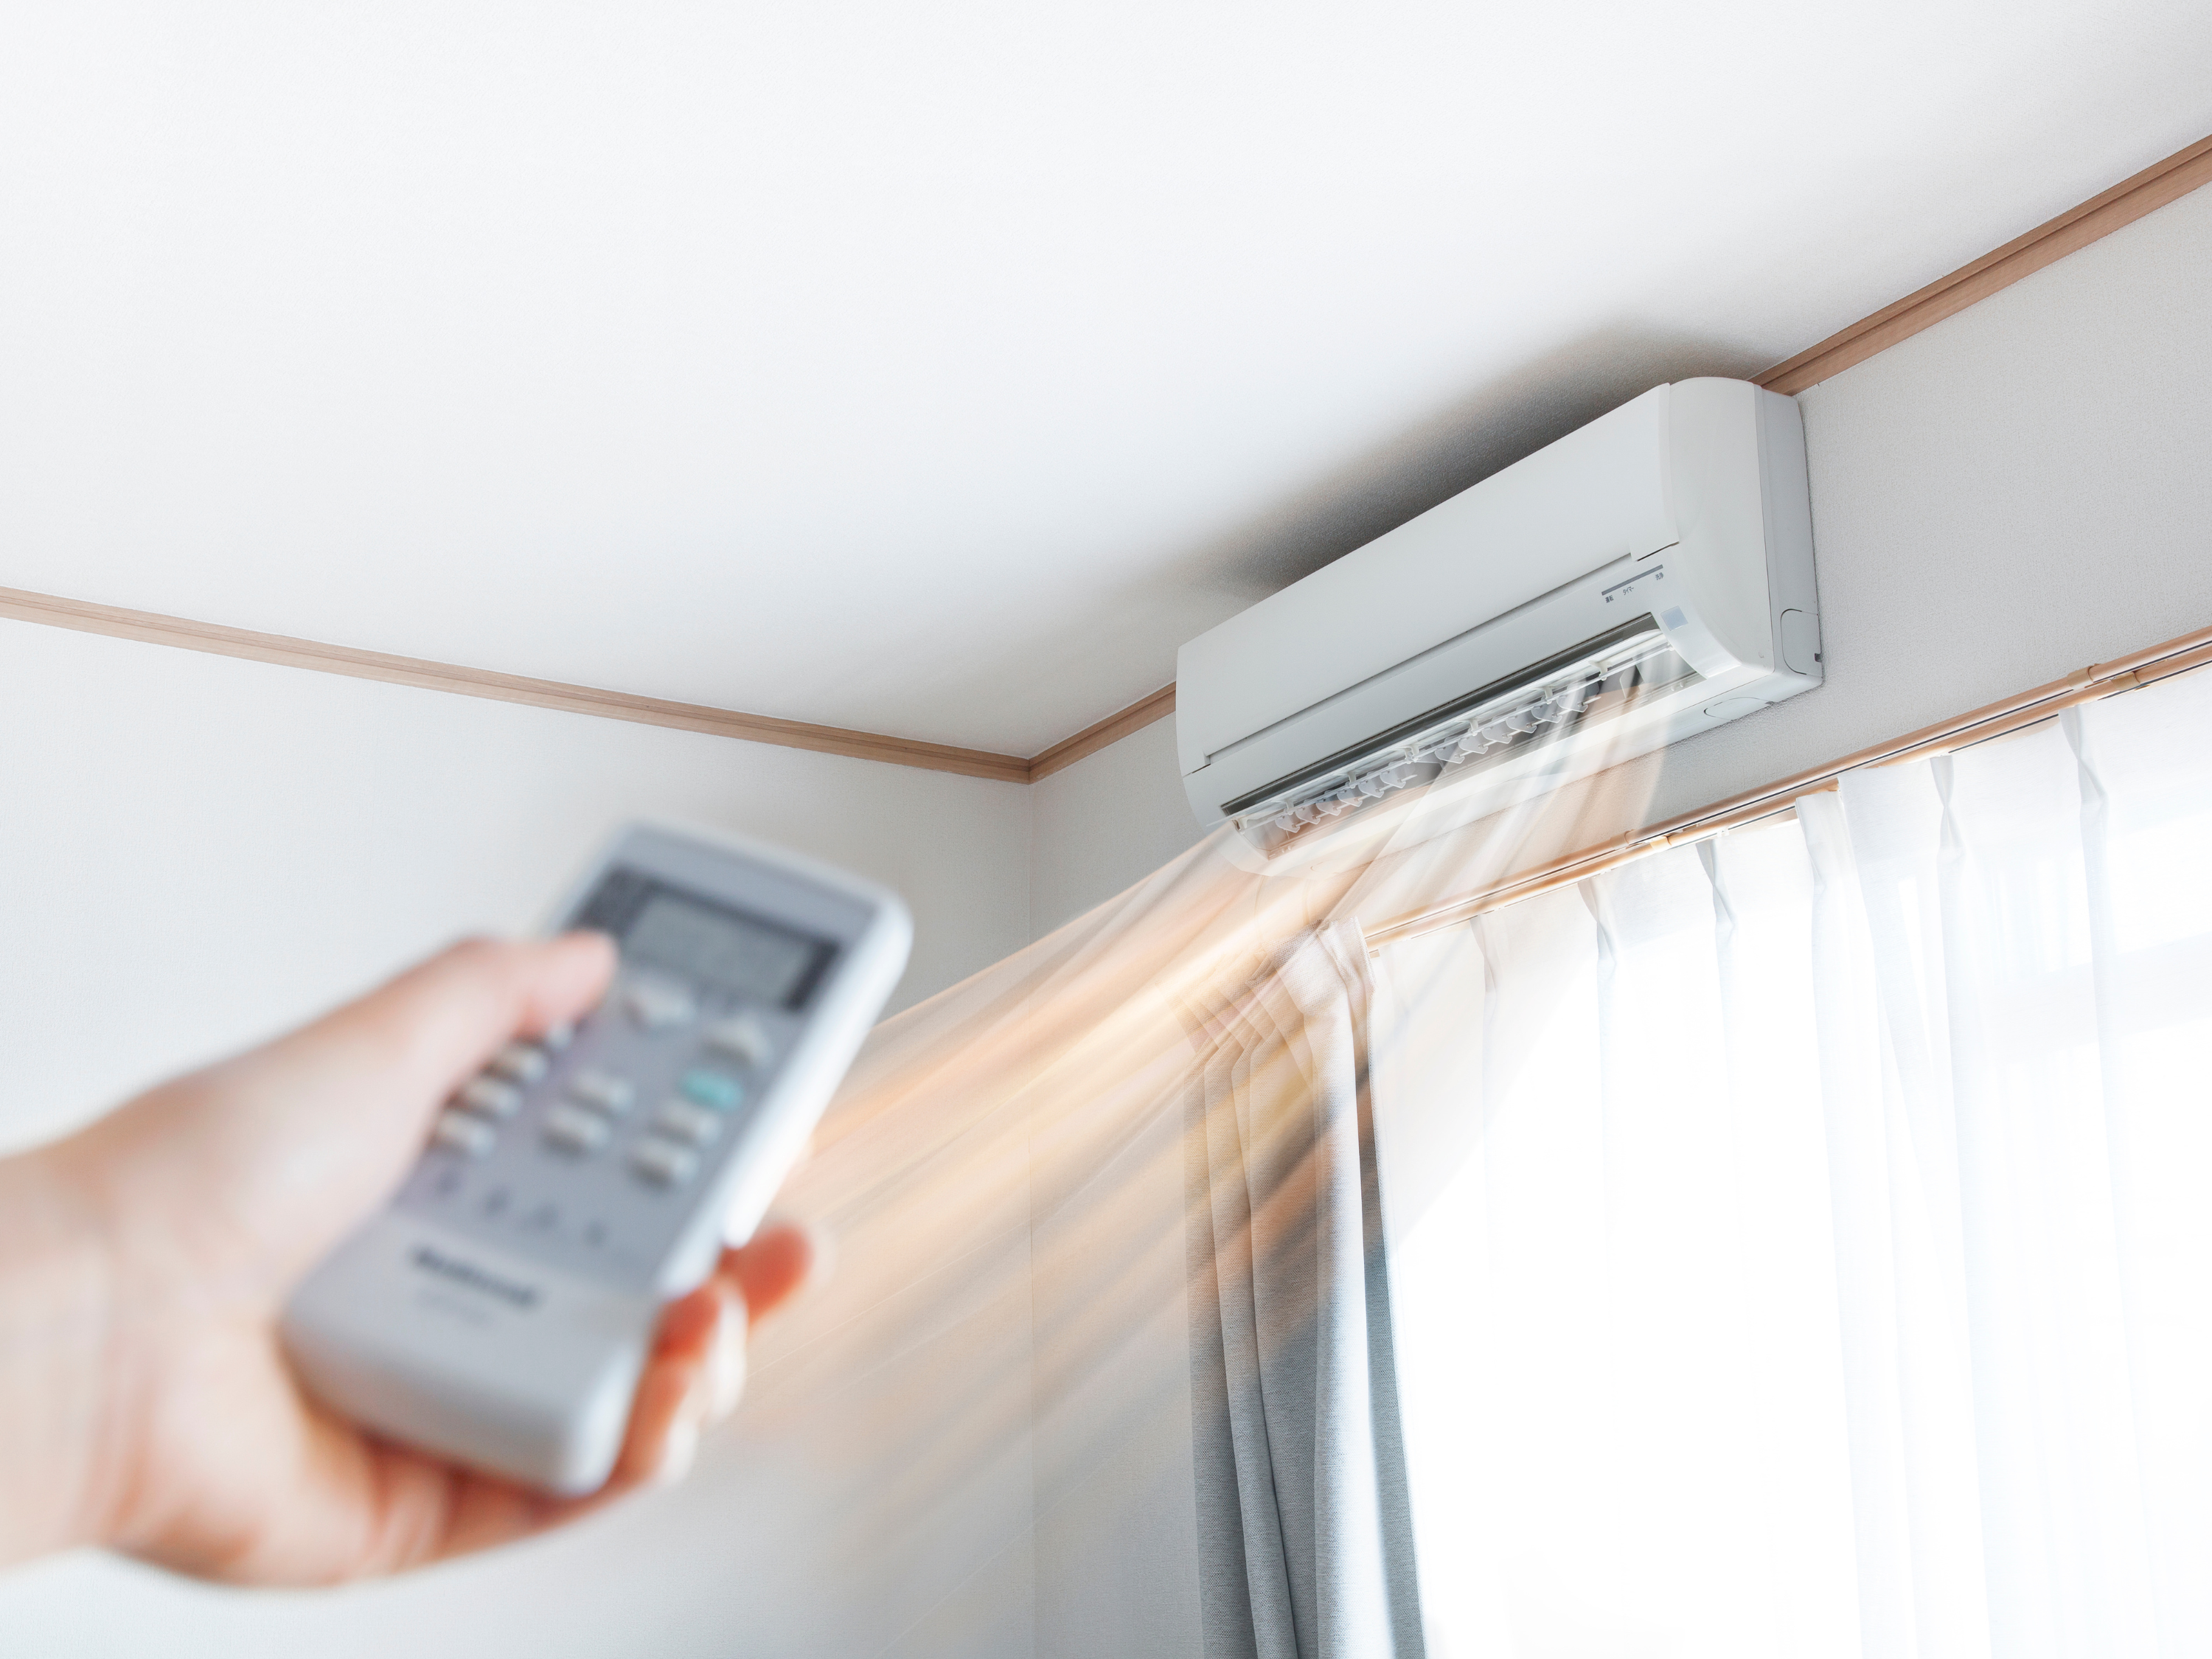 Chế độ hút ấm điều hòa có tốn điện không?